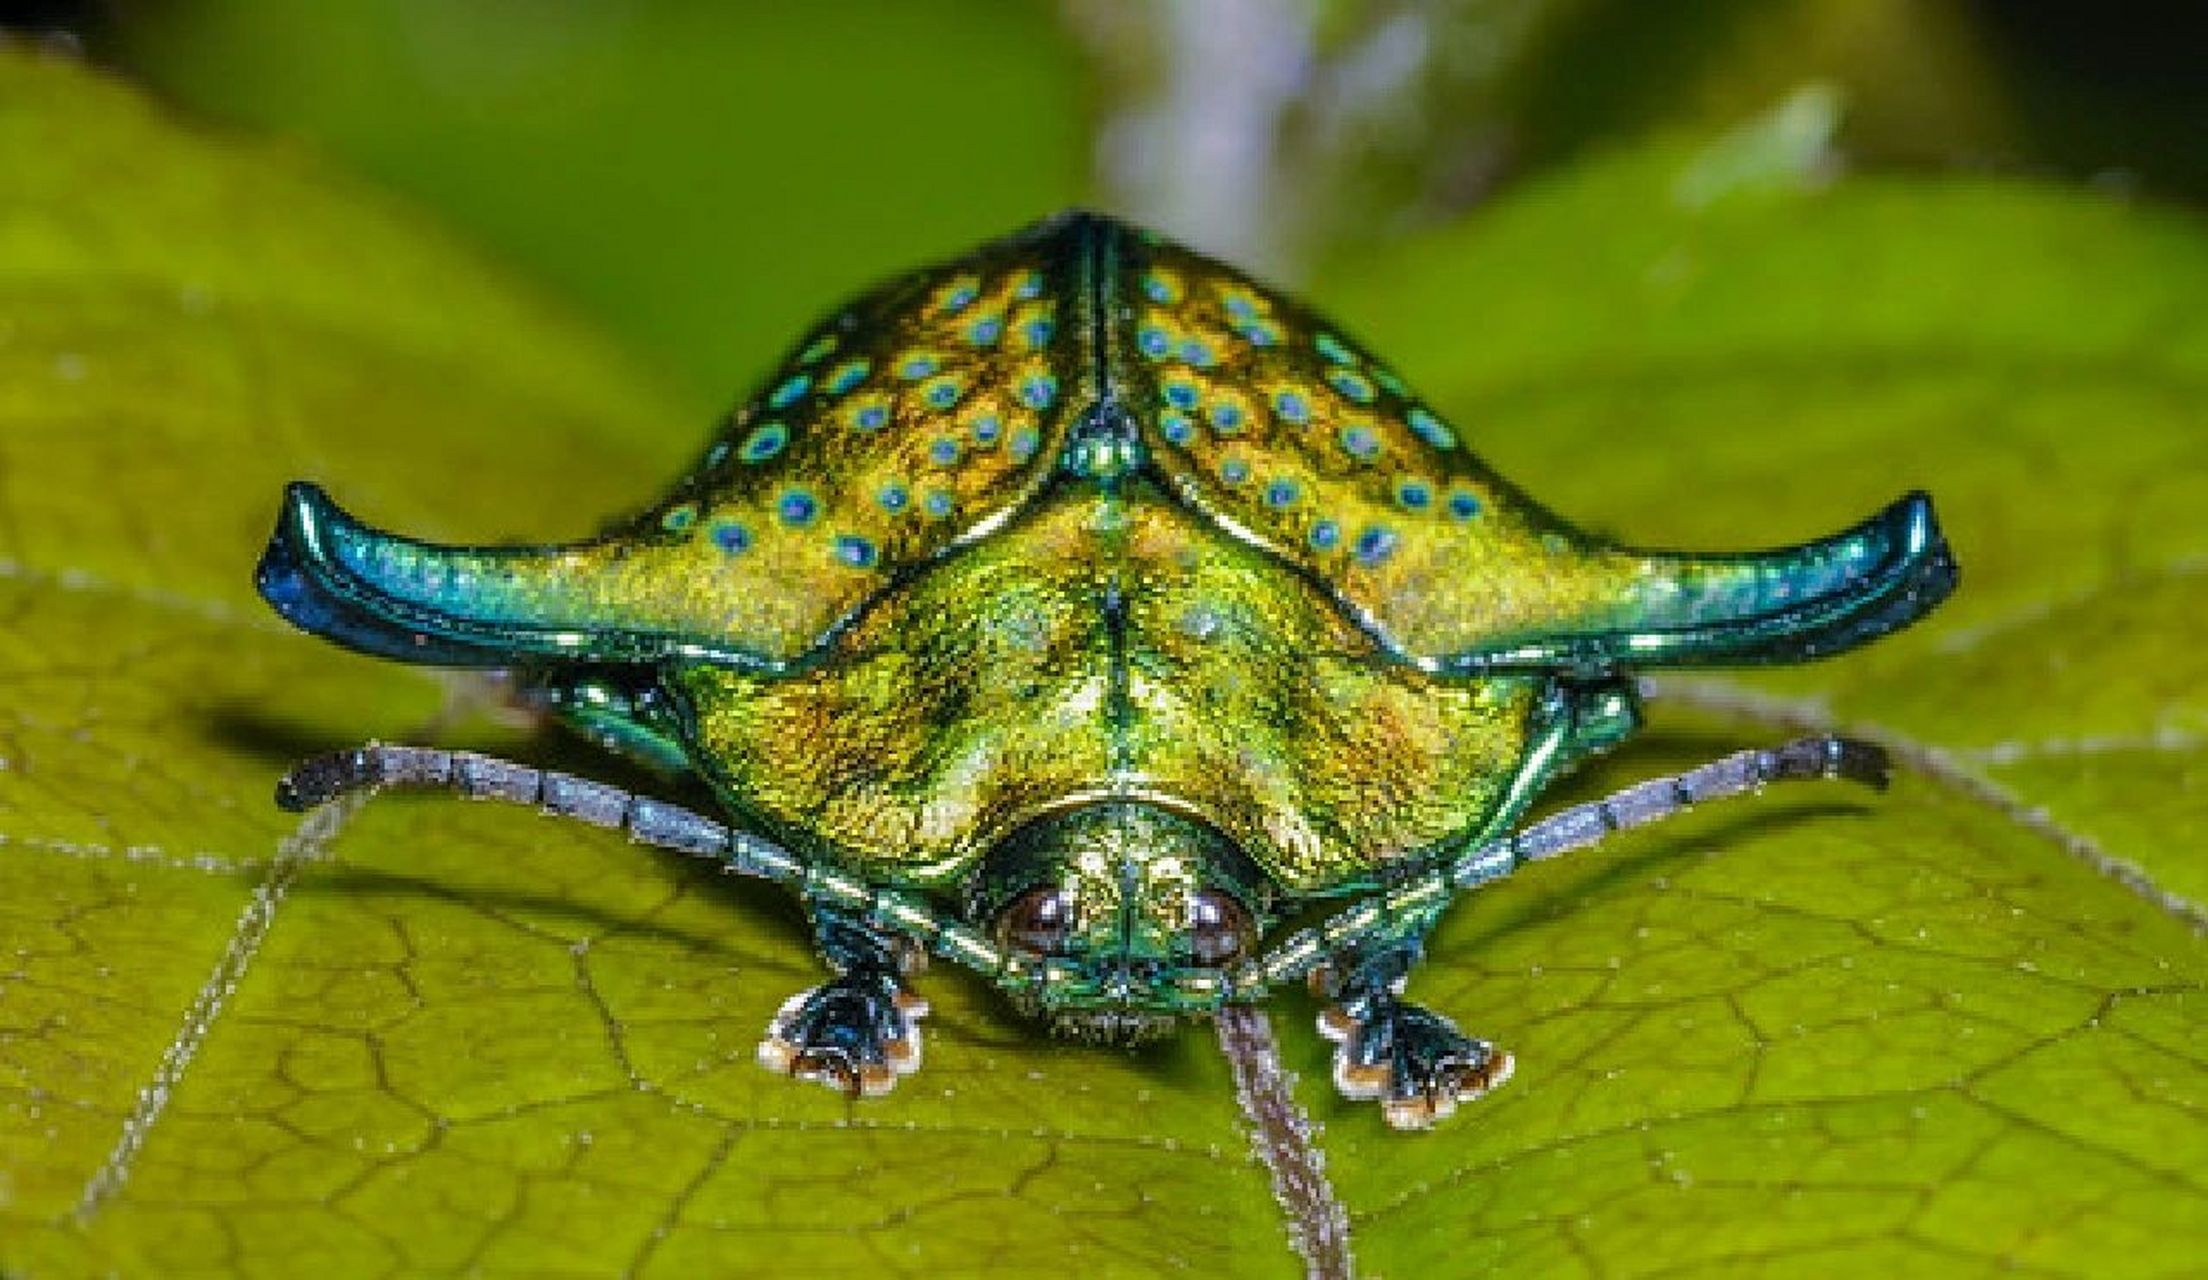 分享一种非常有趣又漂亮的甲虫 中文名:侧角龟甲 拉丁名:omocerus